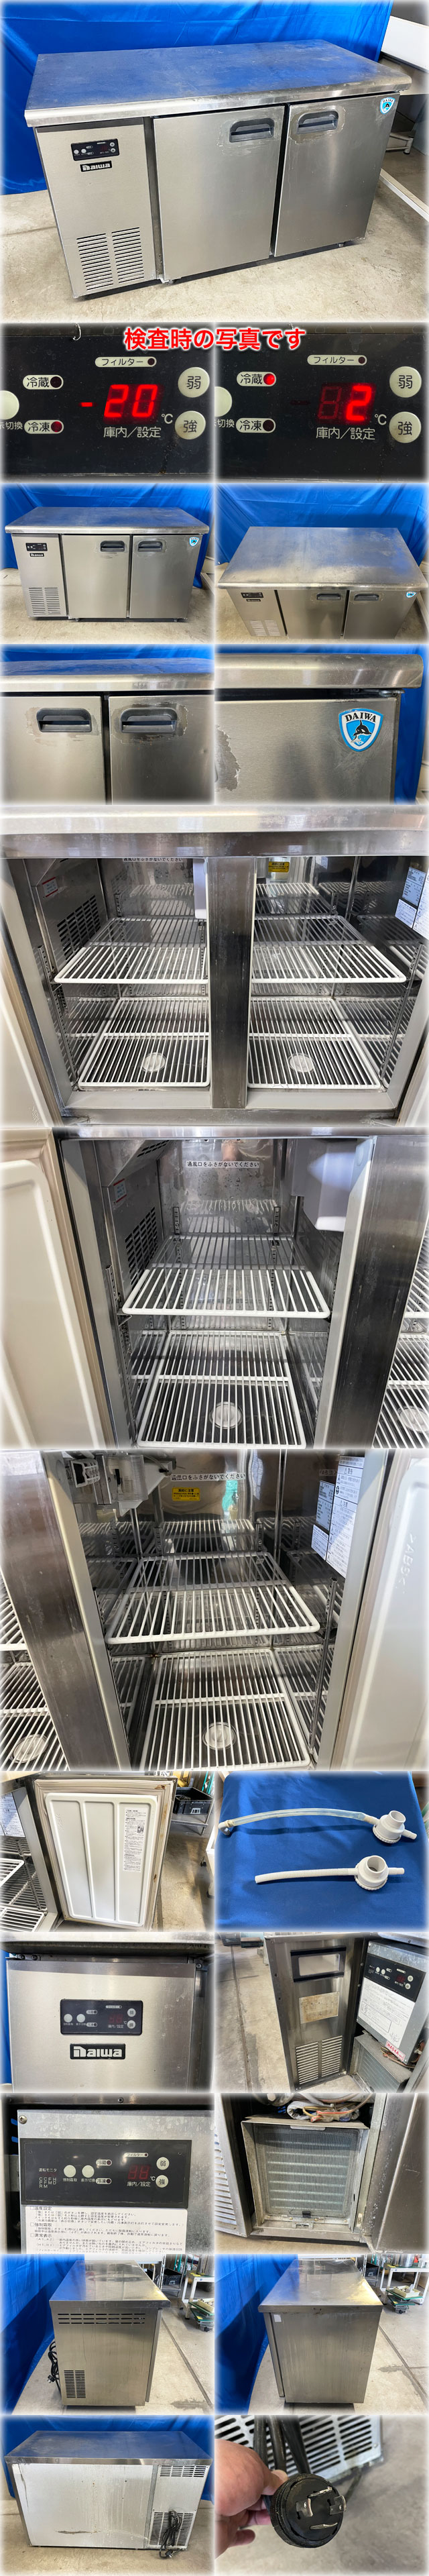 豊富なダイワ冷機 冷凍冷蔵コールドテーブル 4663S 1200x600x800mm 冷凍109L:冷蔵113L 三相200V ヨコ型 台下冷凍冷蔵庫 冷凍冷蔵庫